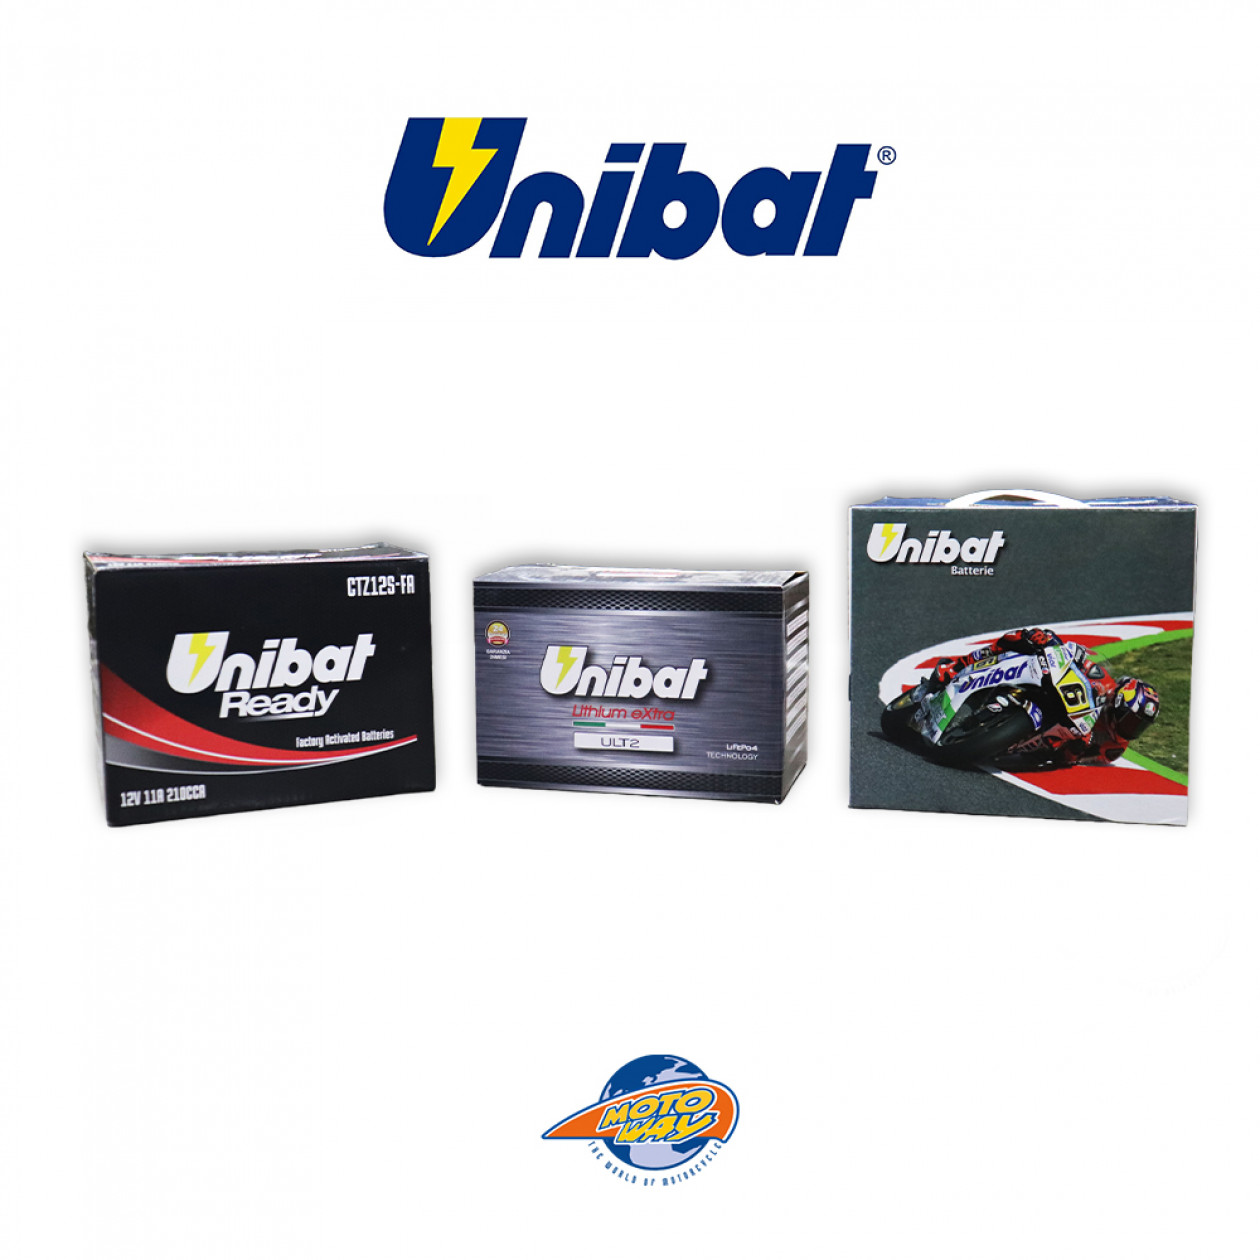 Μπαταρίες Unibat για κάθε τύπο μοτοσυκλέτας, από τη Motoway